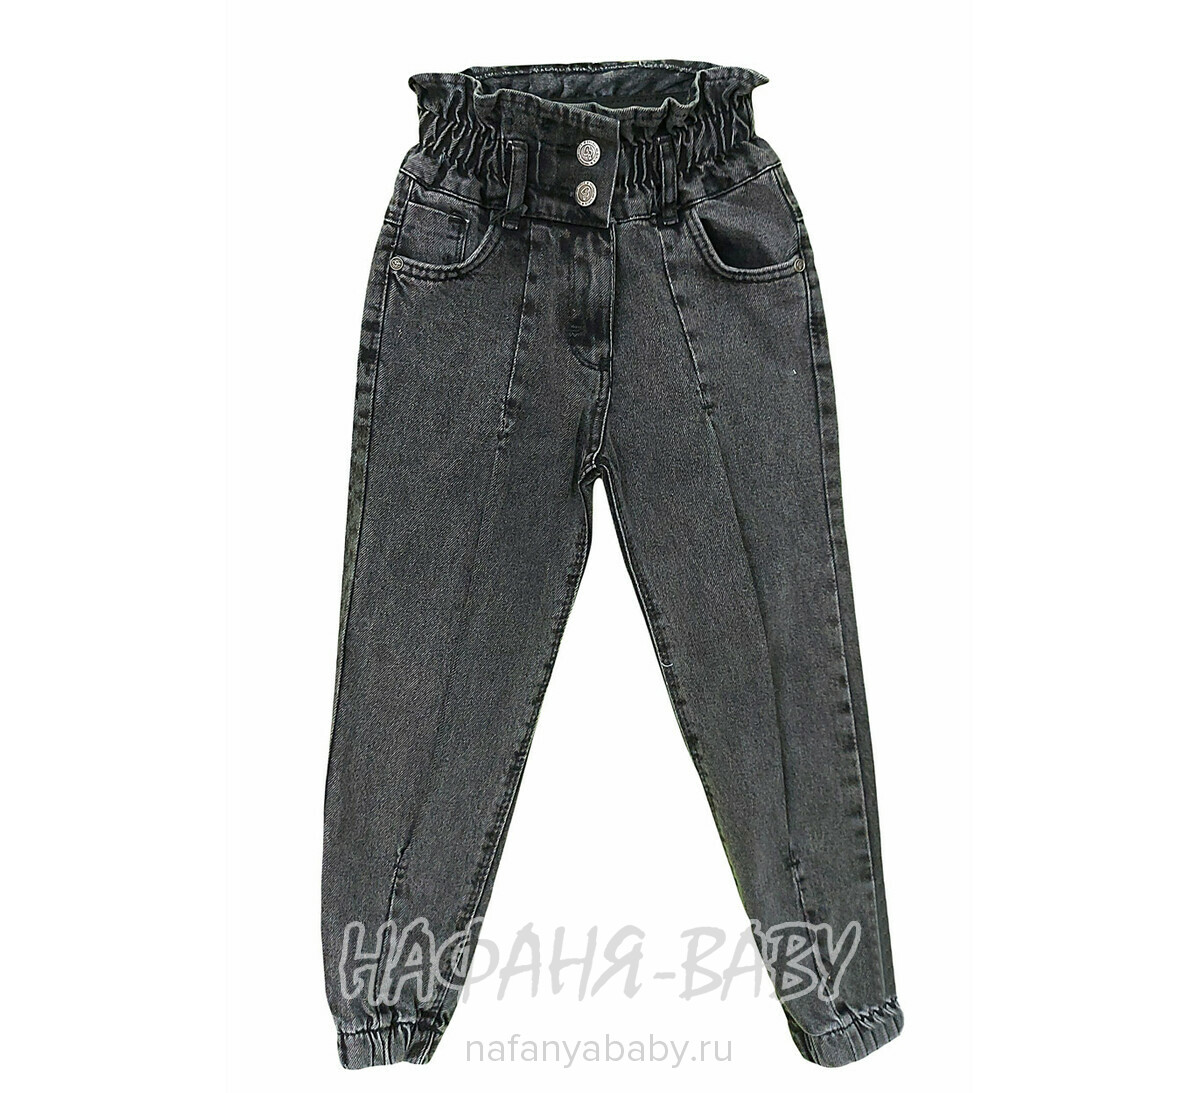 Джинсы YAVRUCAK Jeans арт: 7205 для девочки от 3 до 7 лет, цвет черный, оптом Турция